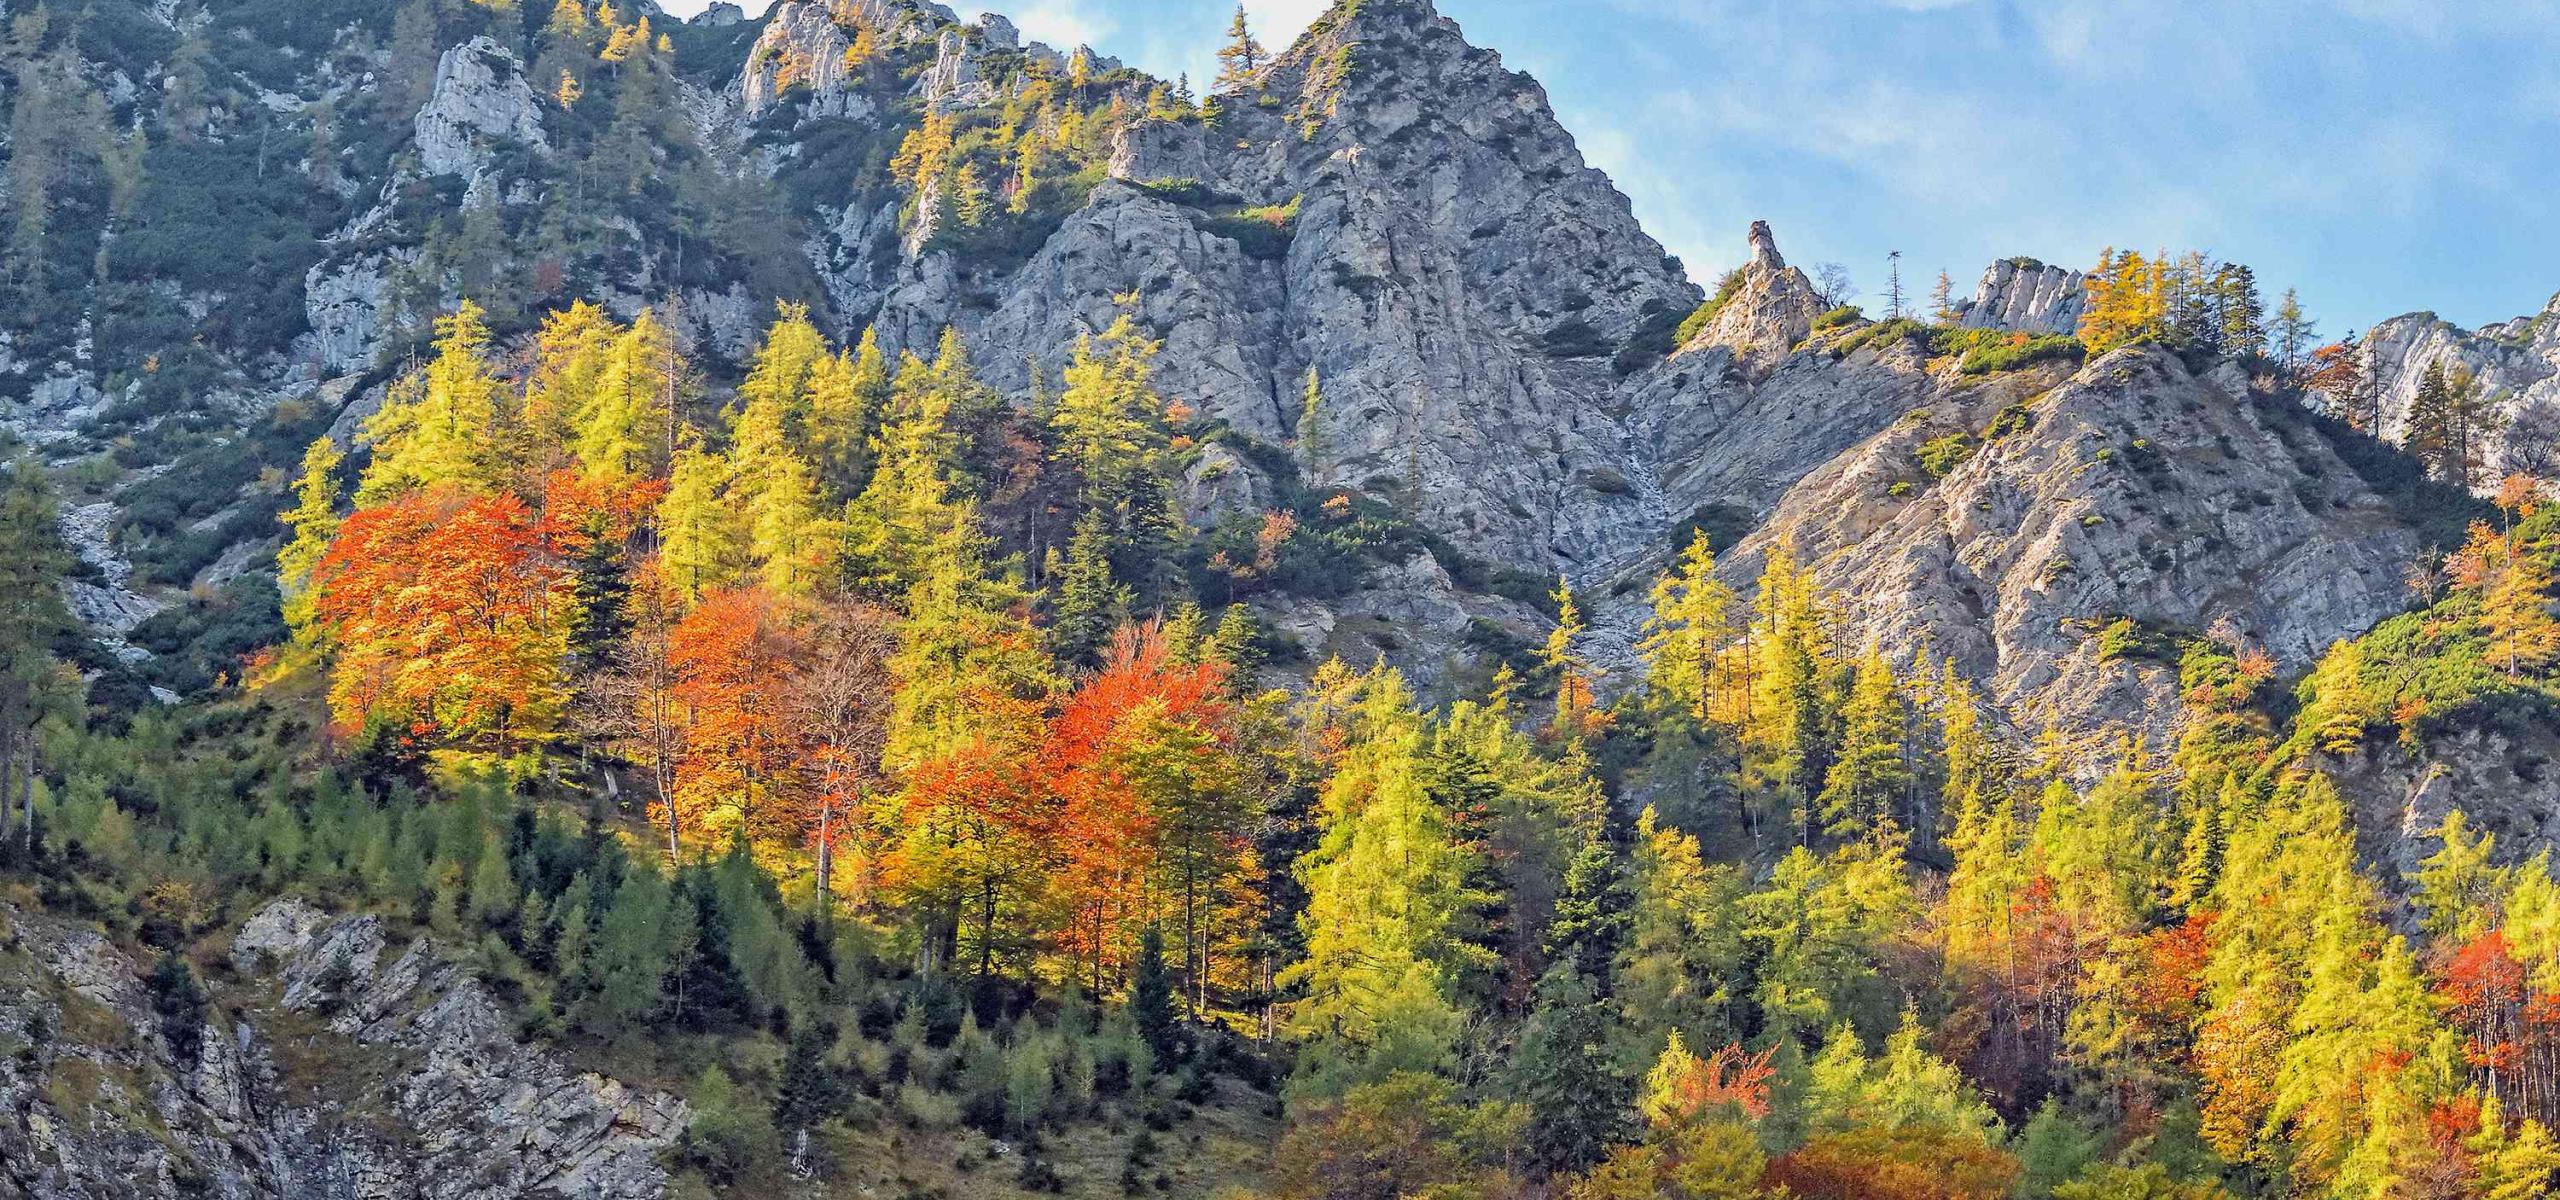 Podzimně zbarvený bukovo- modřínový les roste jako ostrov uprostřed strmého skalnatého terénu.